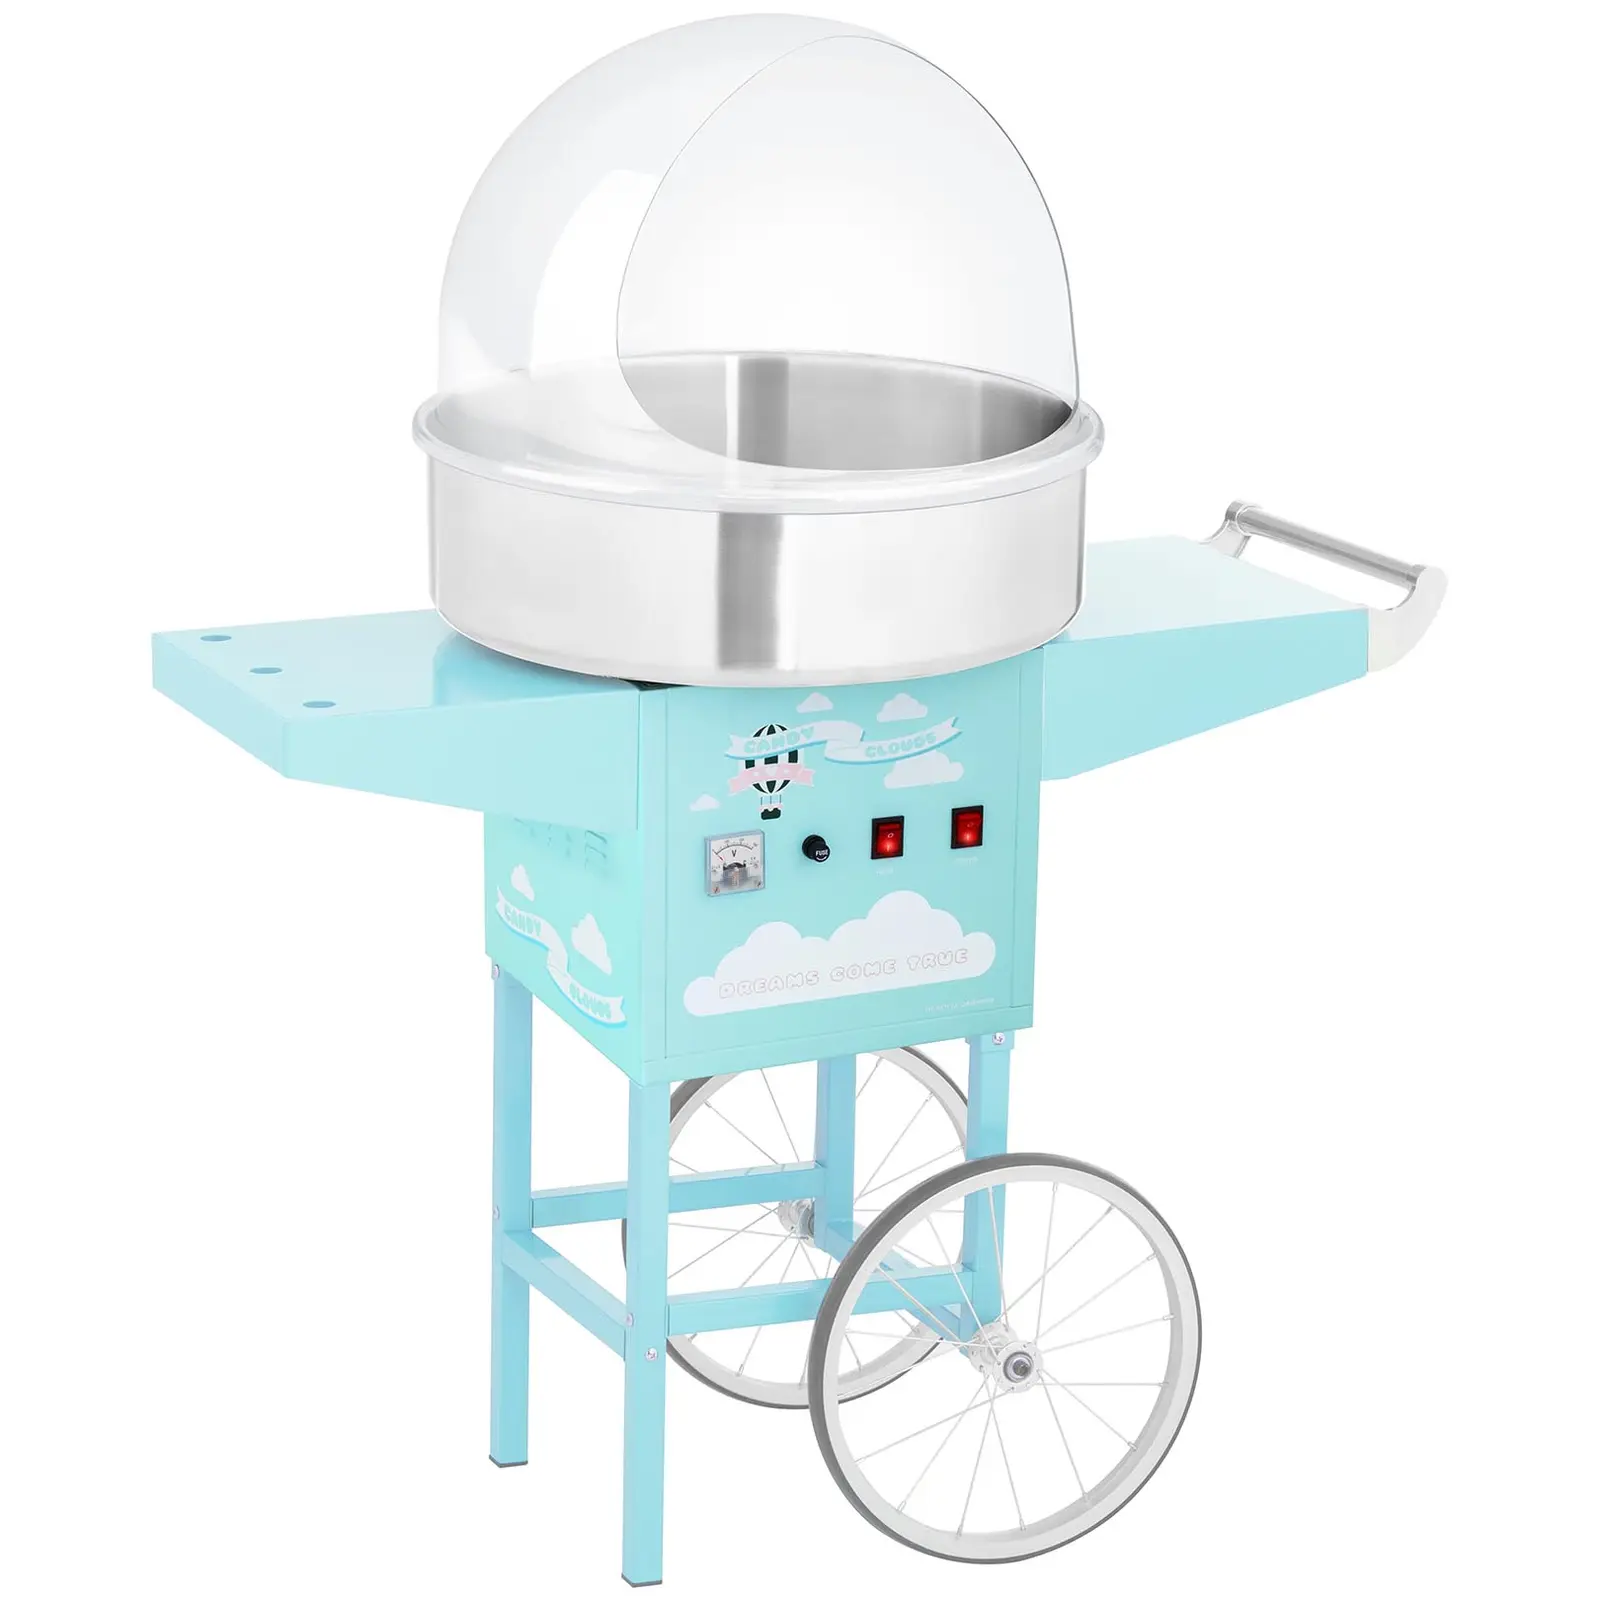 Stroj na cukrovou vatu s vozíkem a ochranným krytem 52 cm 1 200 W tyrkysový - Stroje na cukrovou vatu Royal Catering